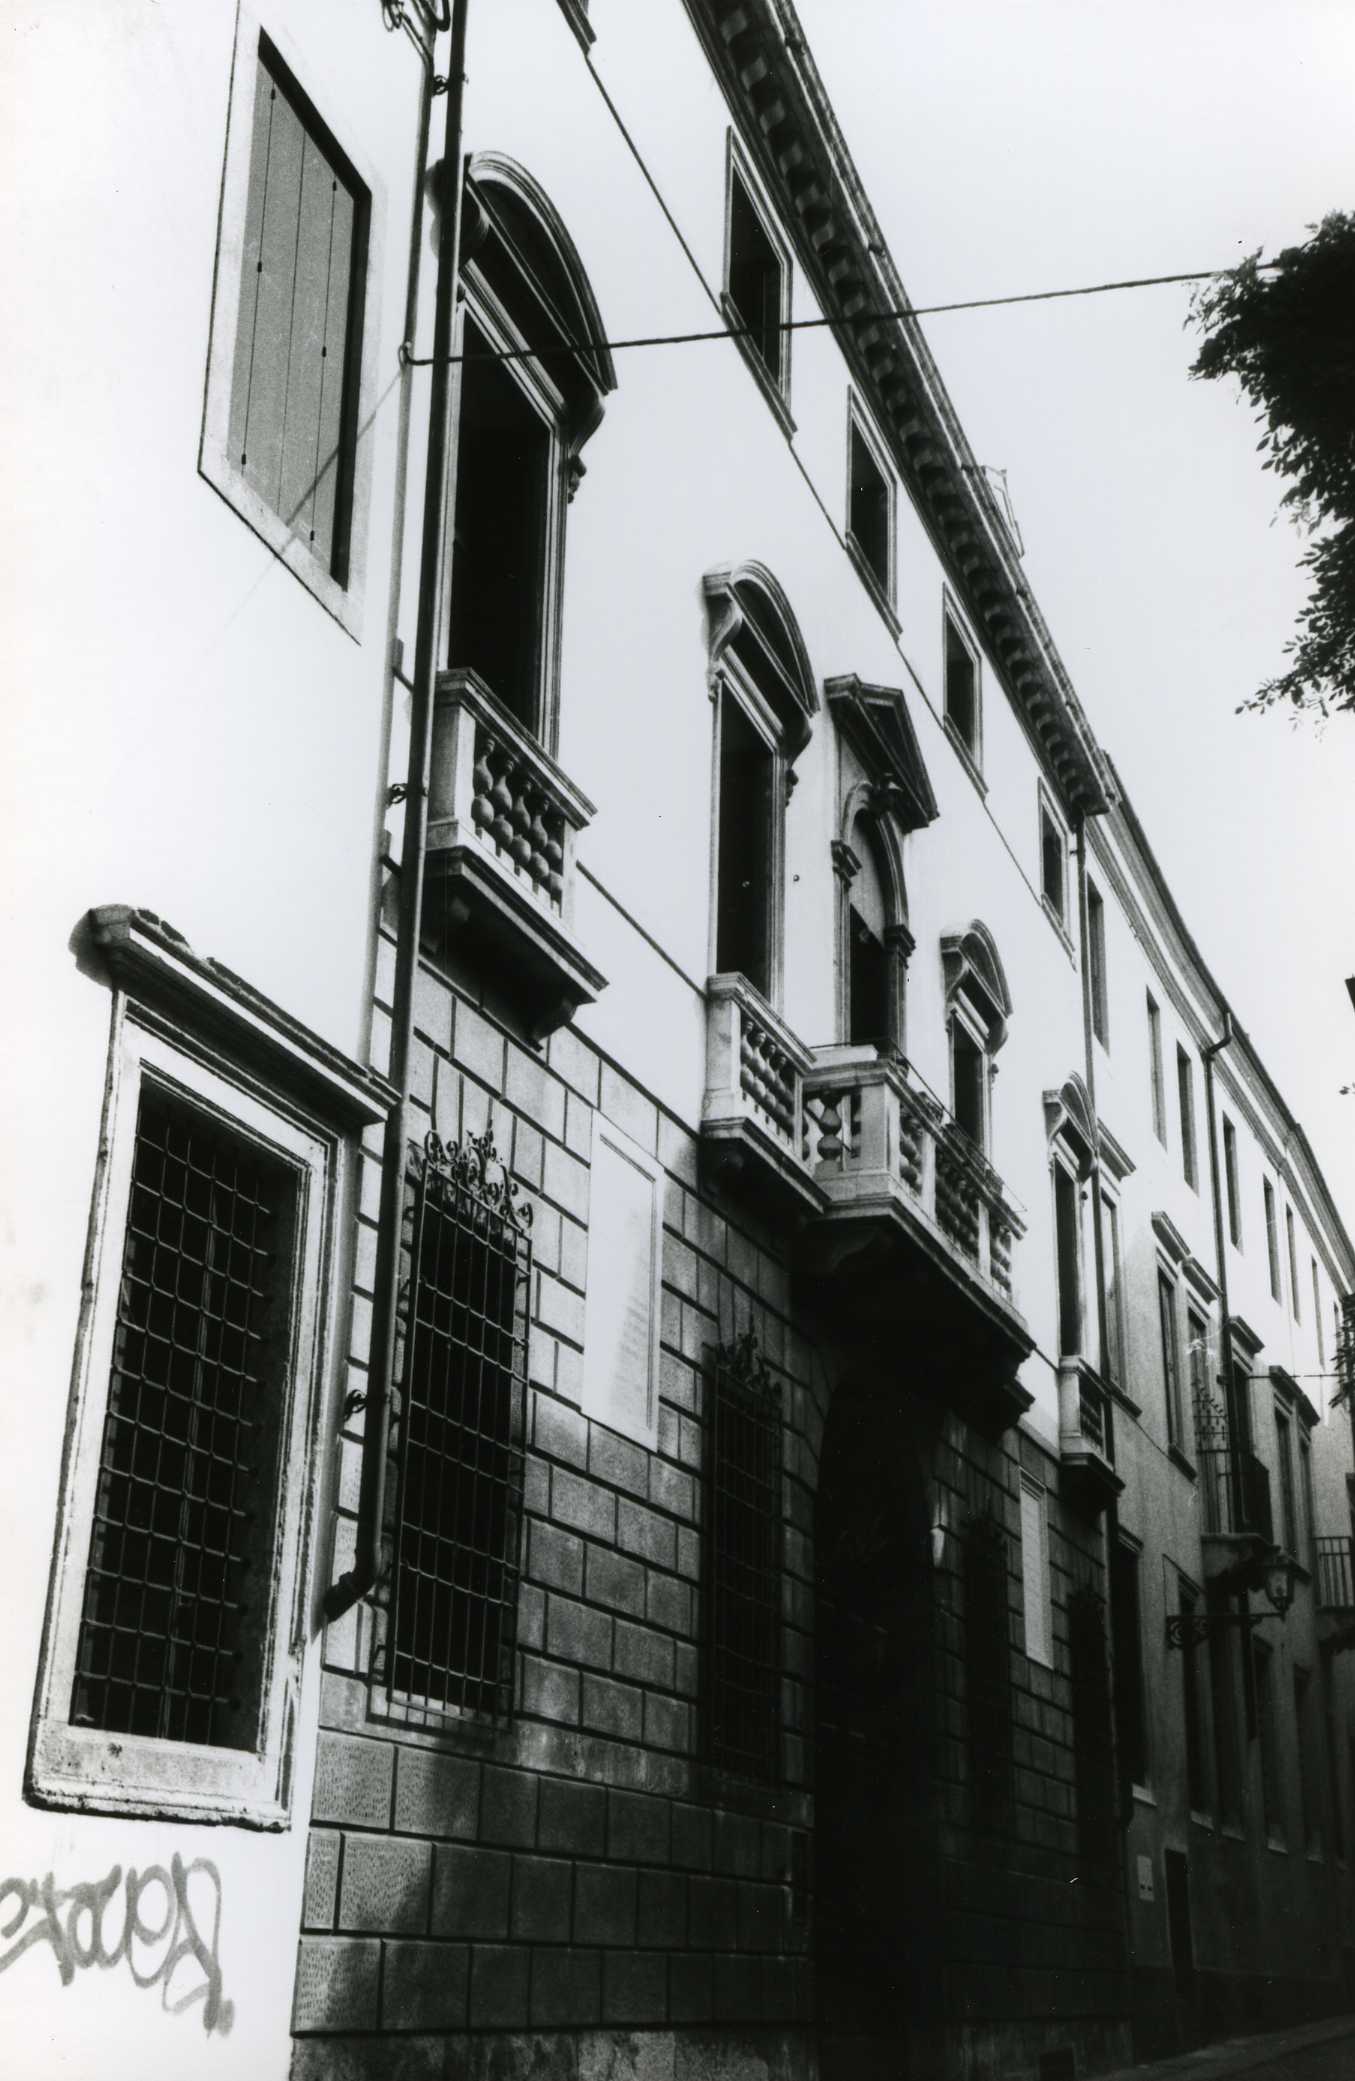 Palazzo Fadinelli (palazzo, nobiliare) - Vicenza (VI)  (XVIII, metà)